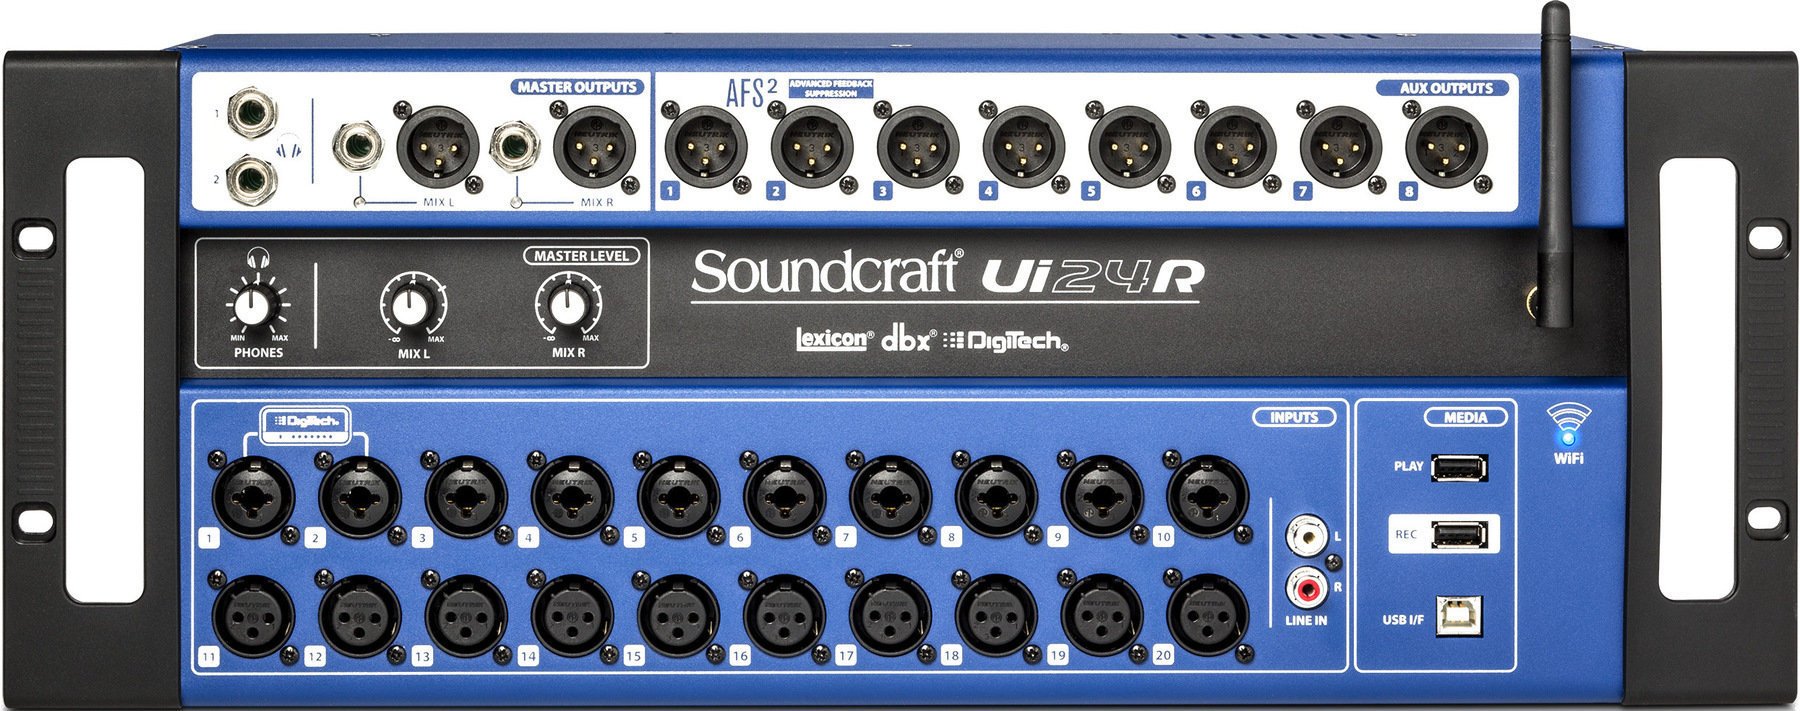 Digitalmischpult Soundcraft Ui-24R Digitalmischpult